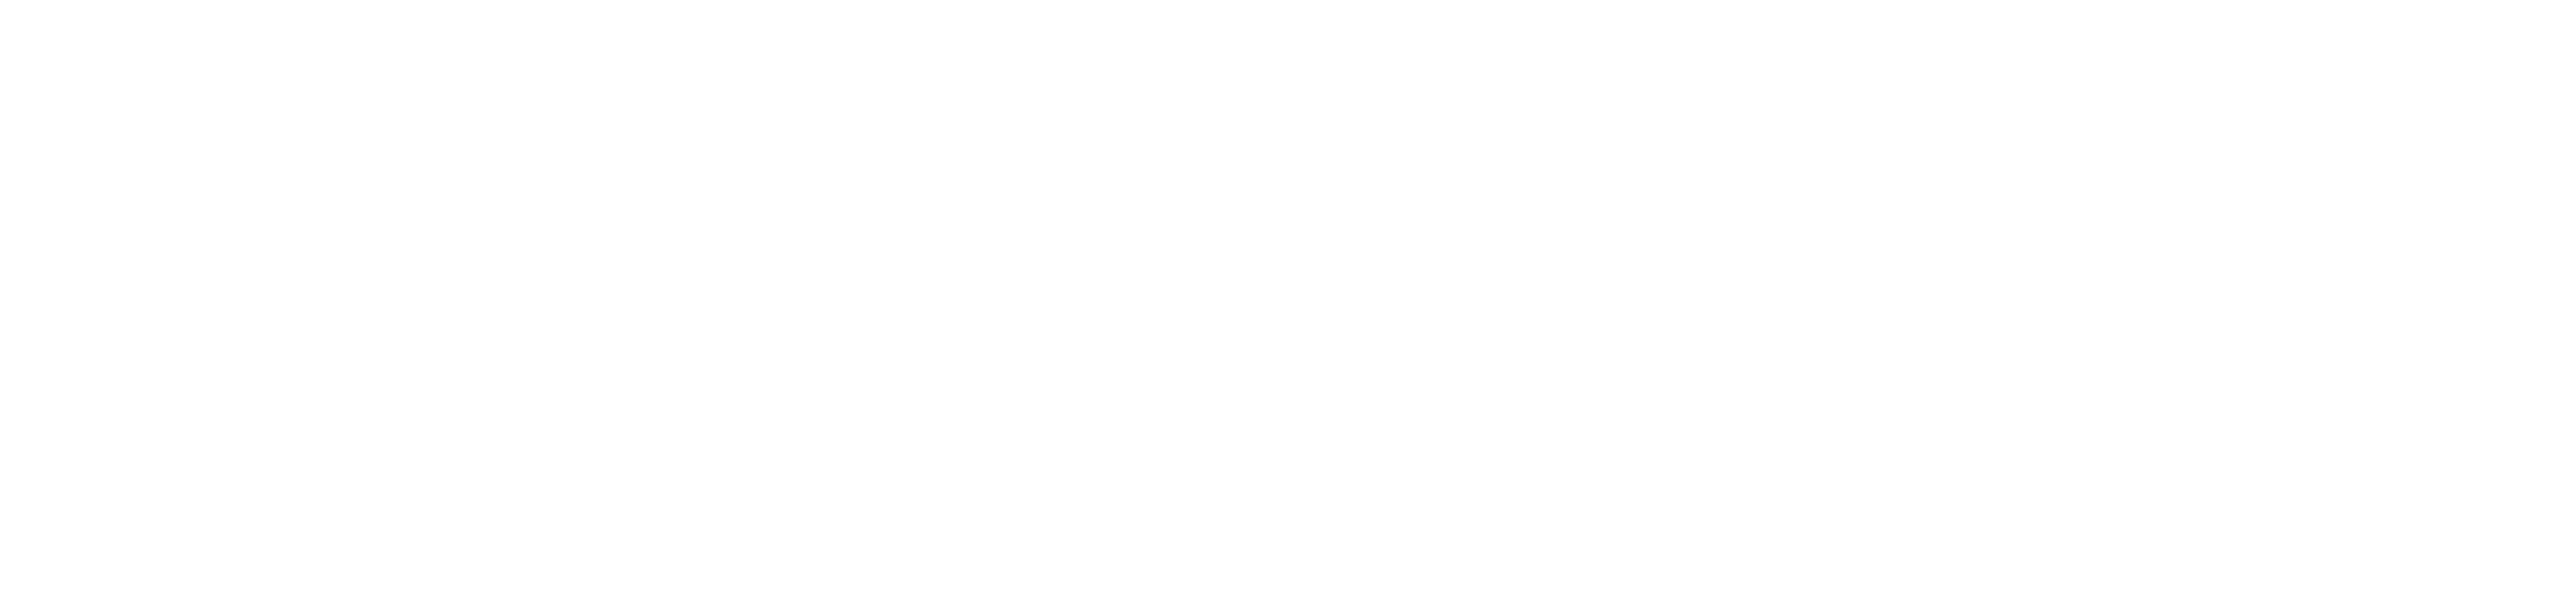 University Launchpad